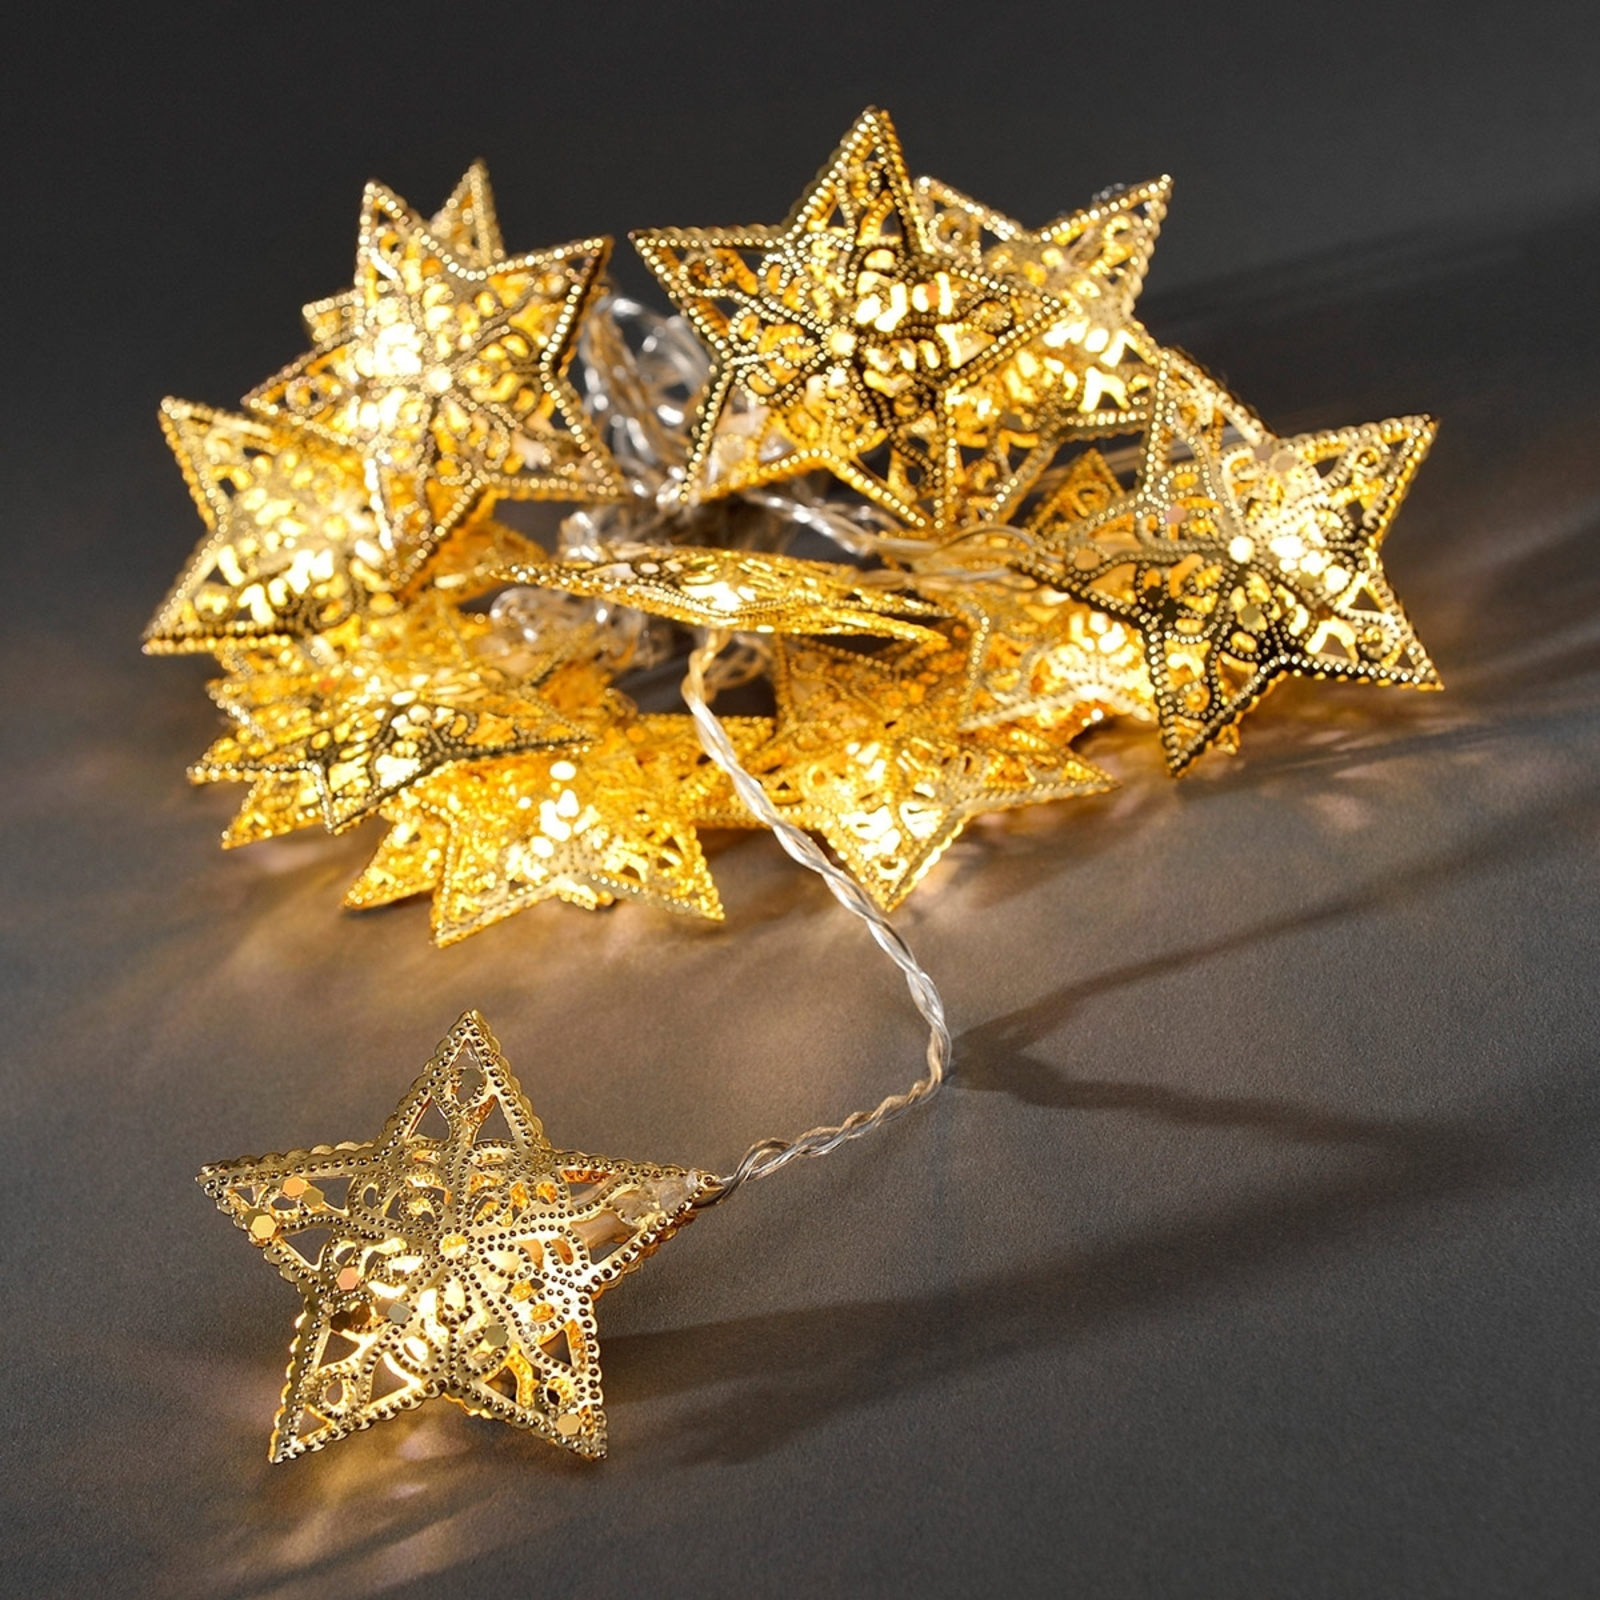 16-flammige LED-Lichterkette mit goldenen Sternen